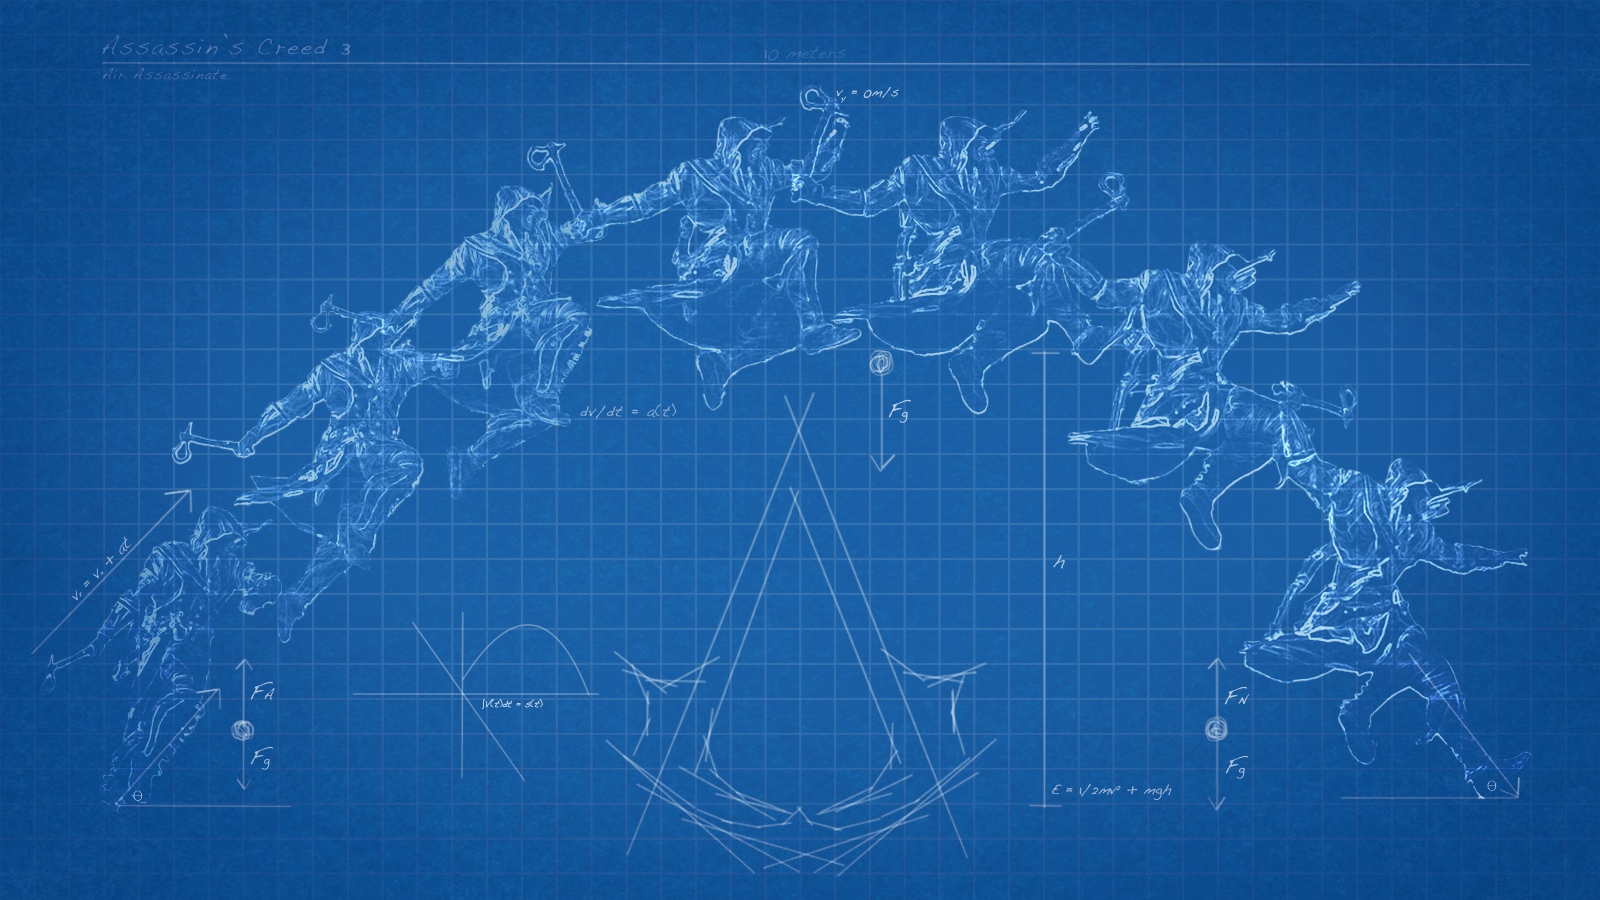 Assassins Creed 3 Blueprint Wallpaper by